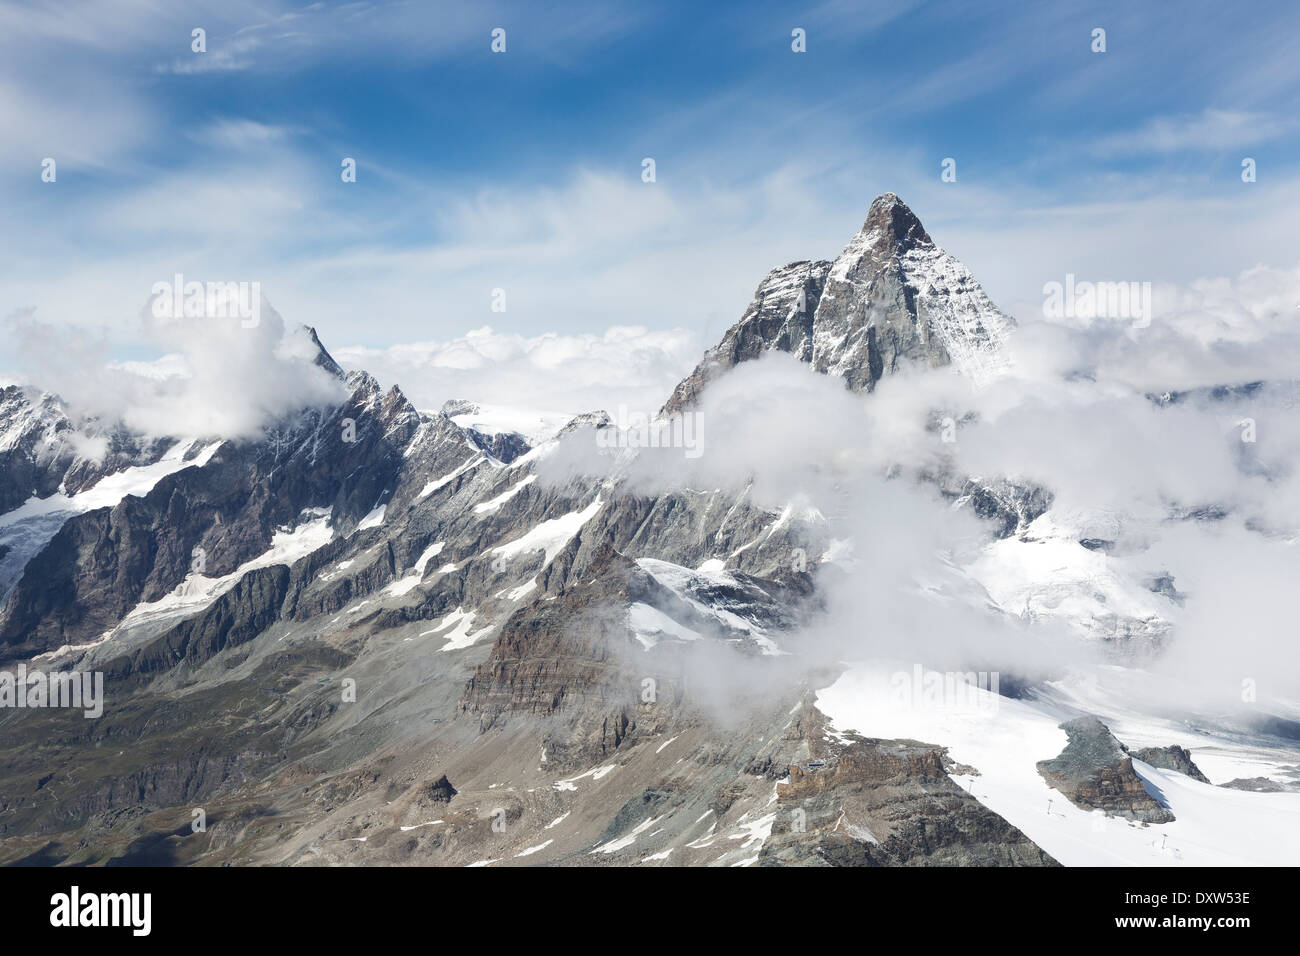 Matterhorn Glacier Paradise Peak vu de, au-dessus de la ville de Zermatt, Suisse Banque D'Images